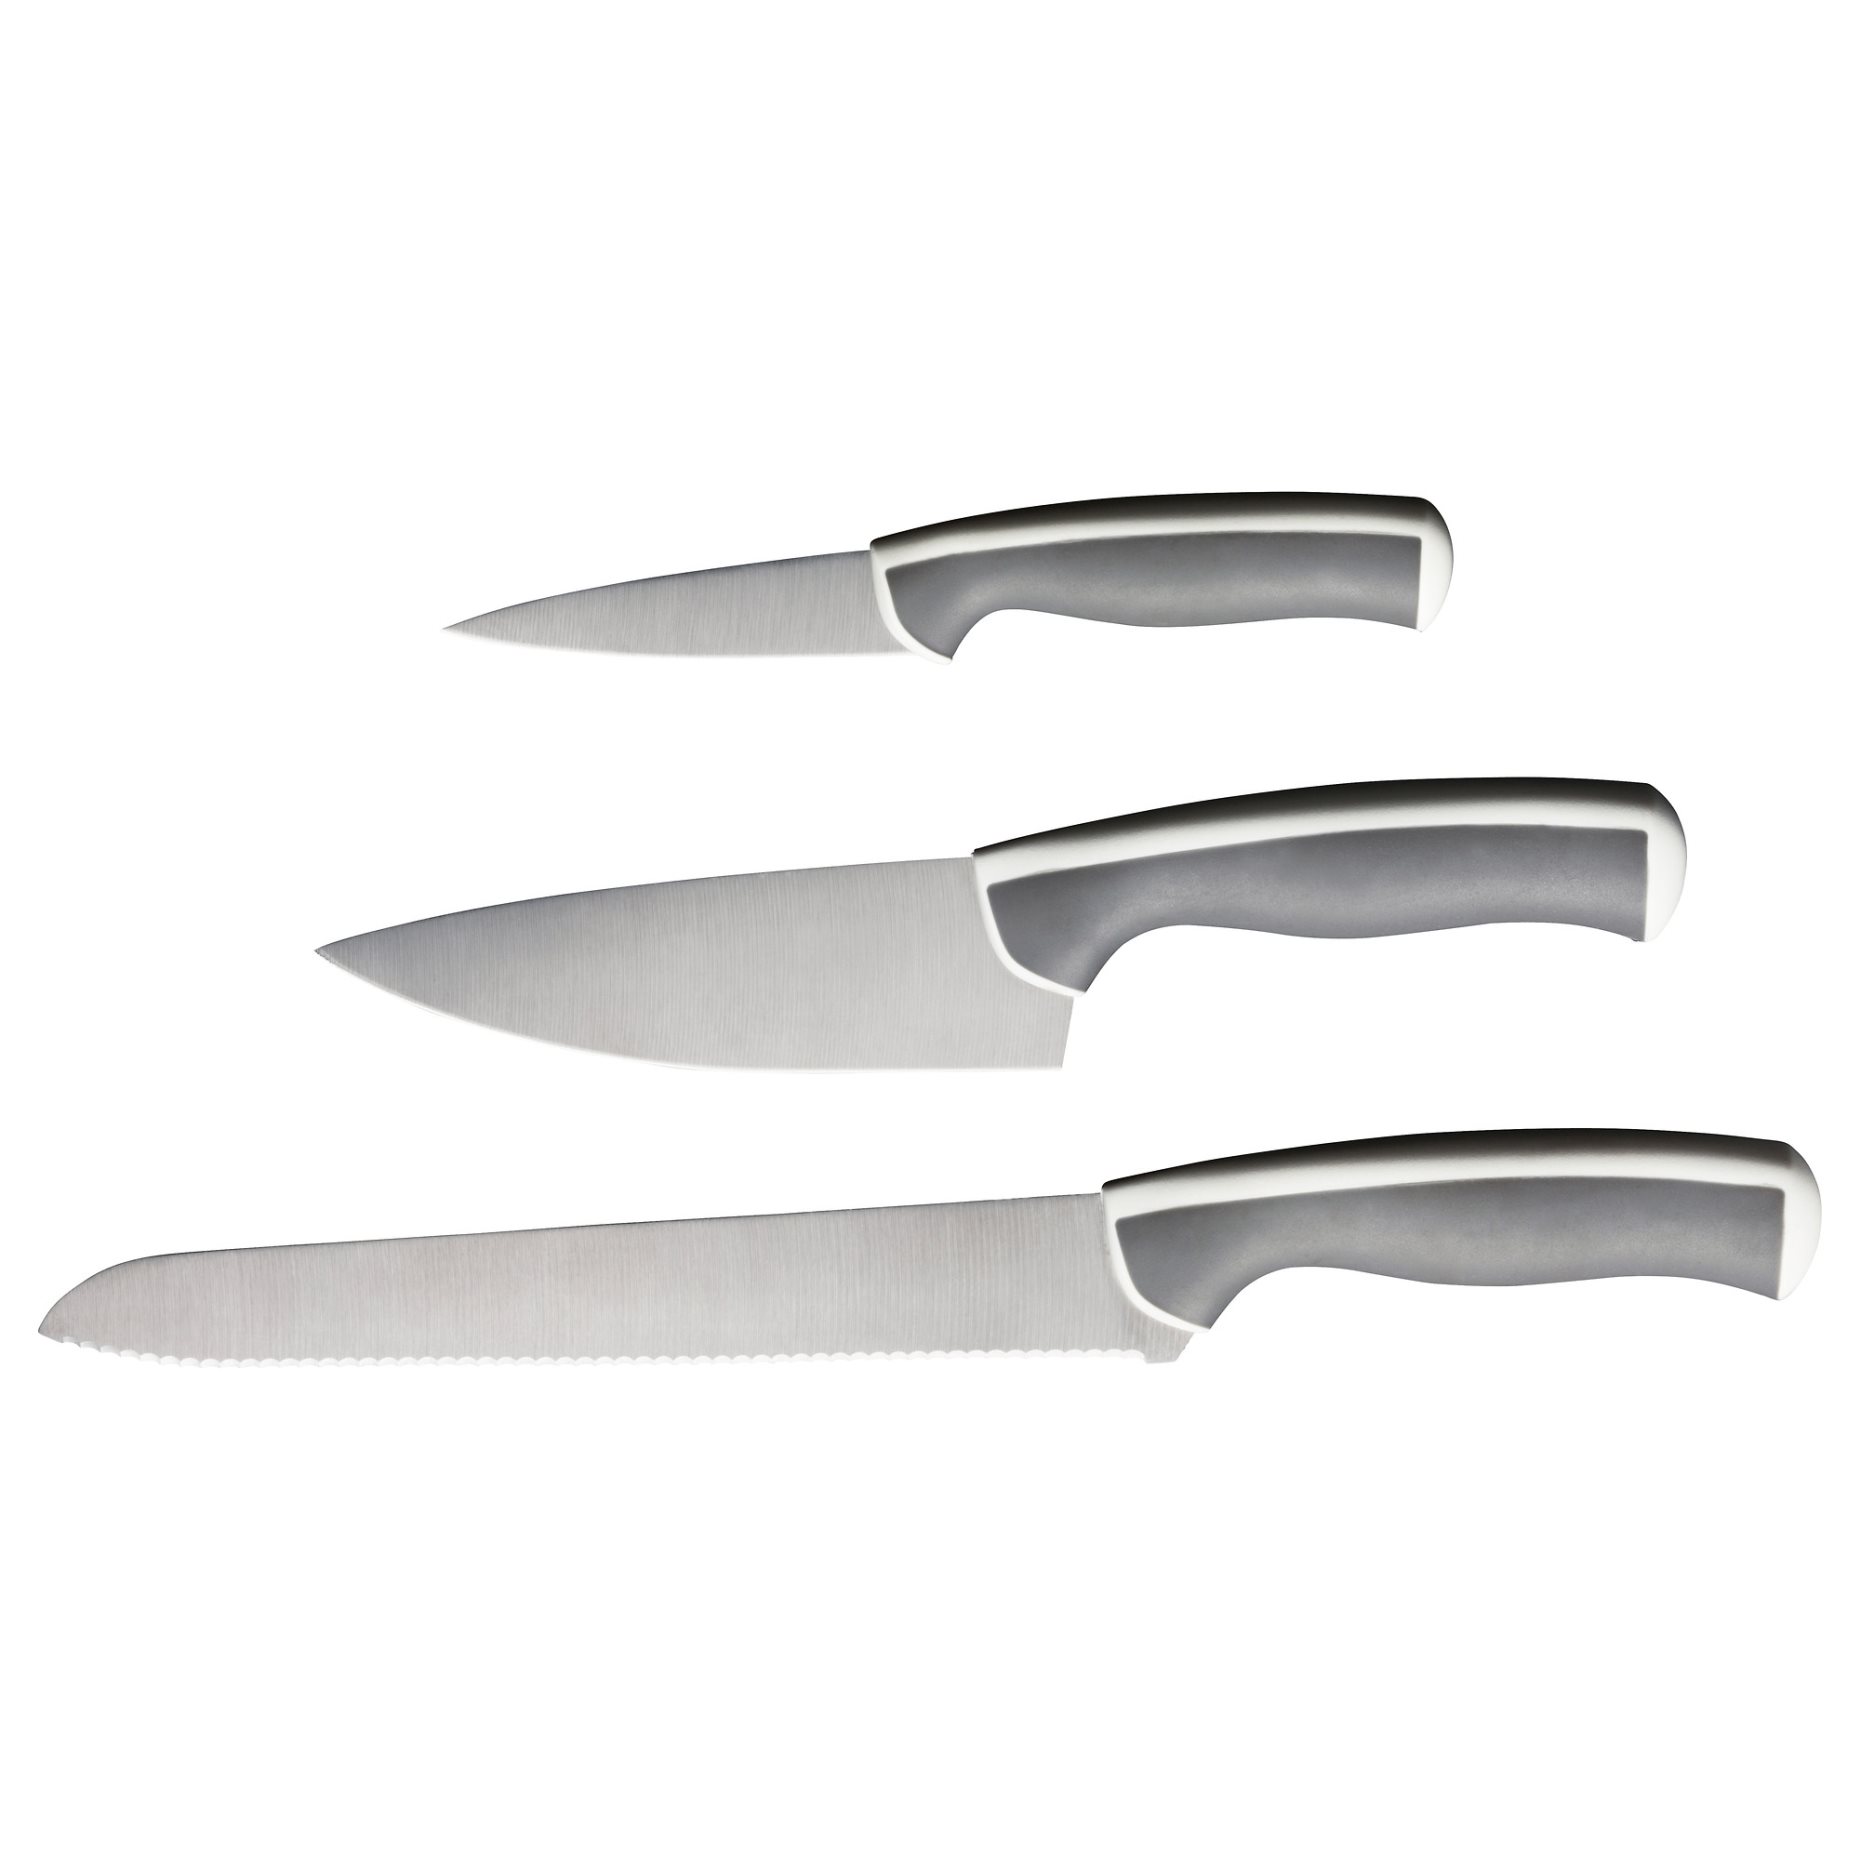 ÄNDLIG, 3-piece knife set, 702.576.24